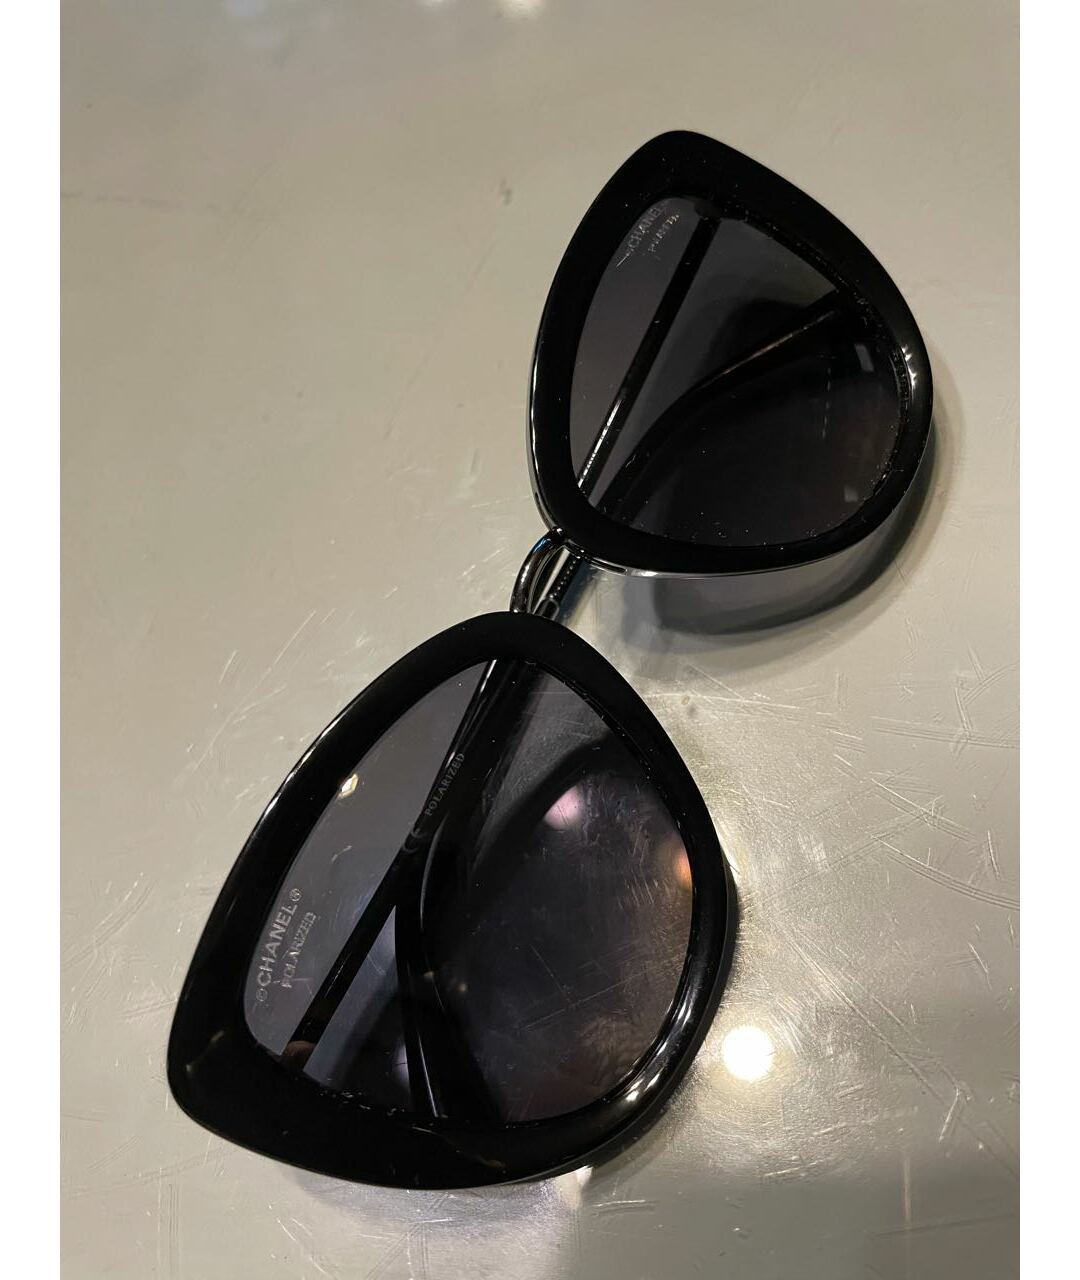 CHANEL PRE-OWNED Черные пластиковые солнцезащитные очки, фото 3